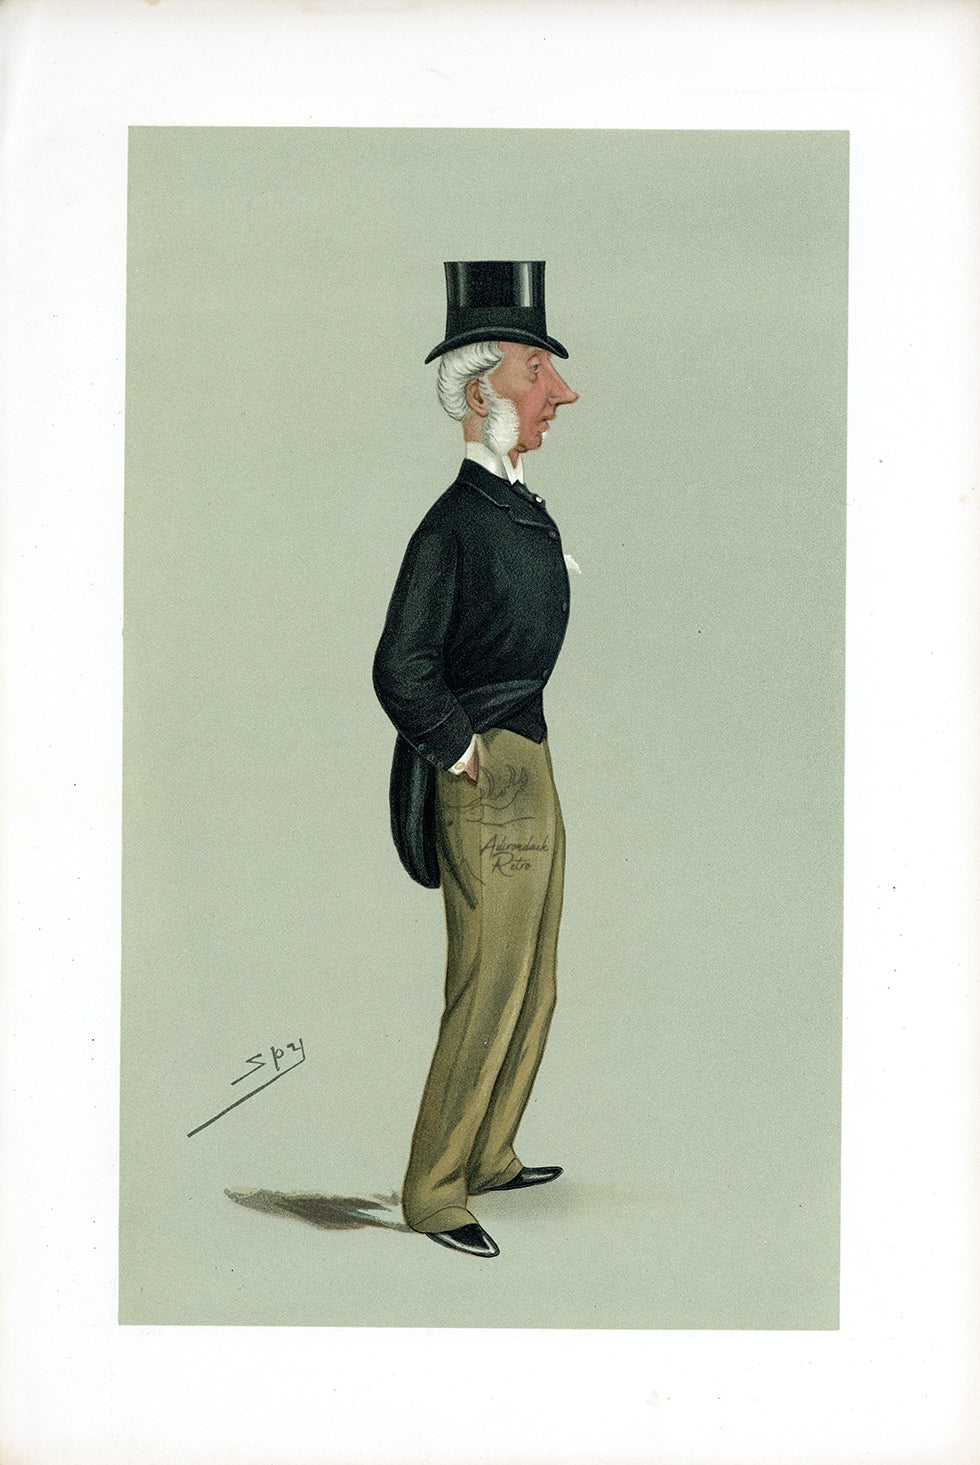 1889 Vanity Fair Proof Plate - Sir George Russell Spy Print